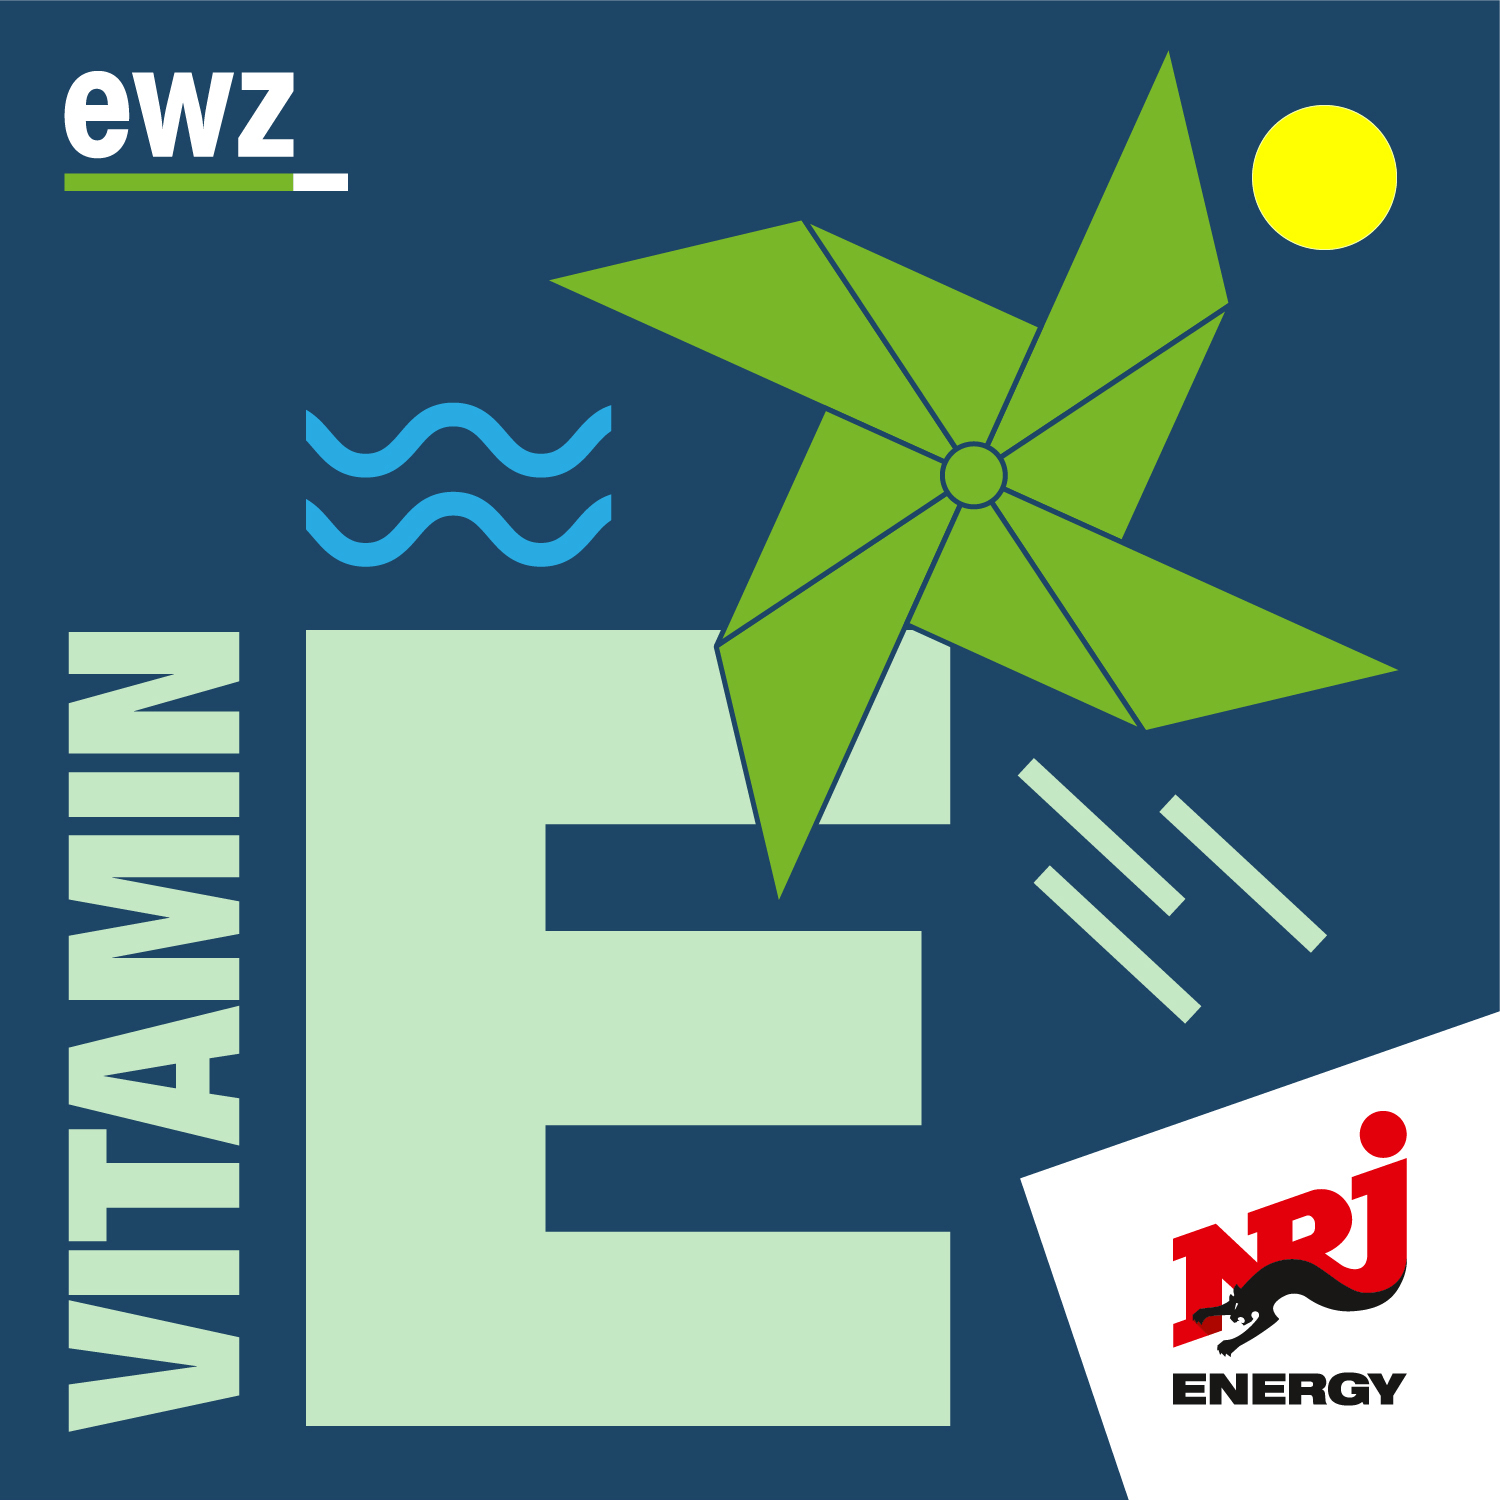 Vitamin E - der Energiepodcast von Energy und ewz